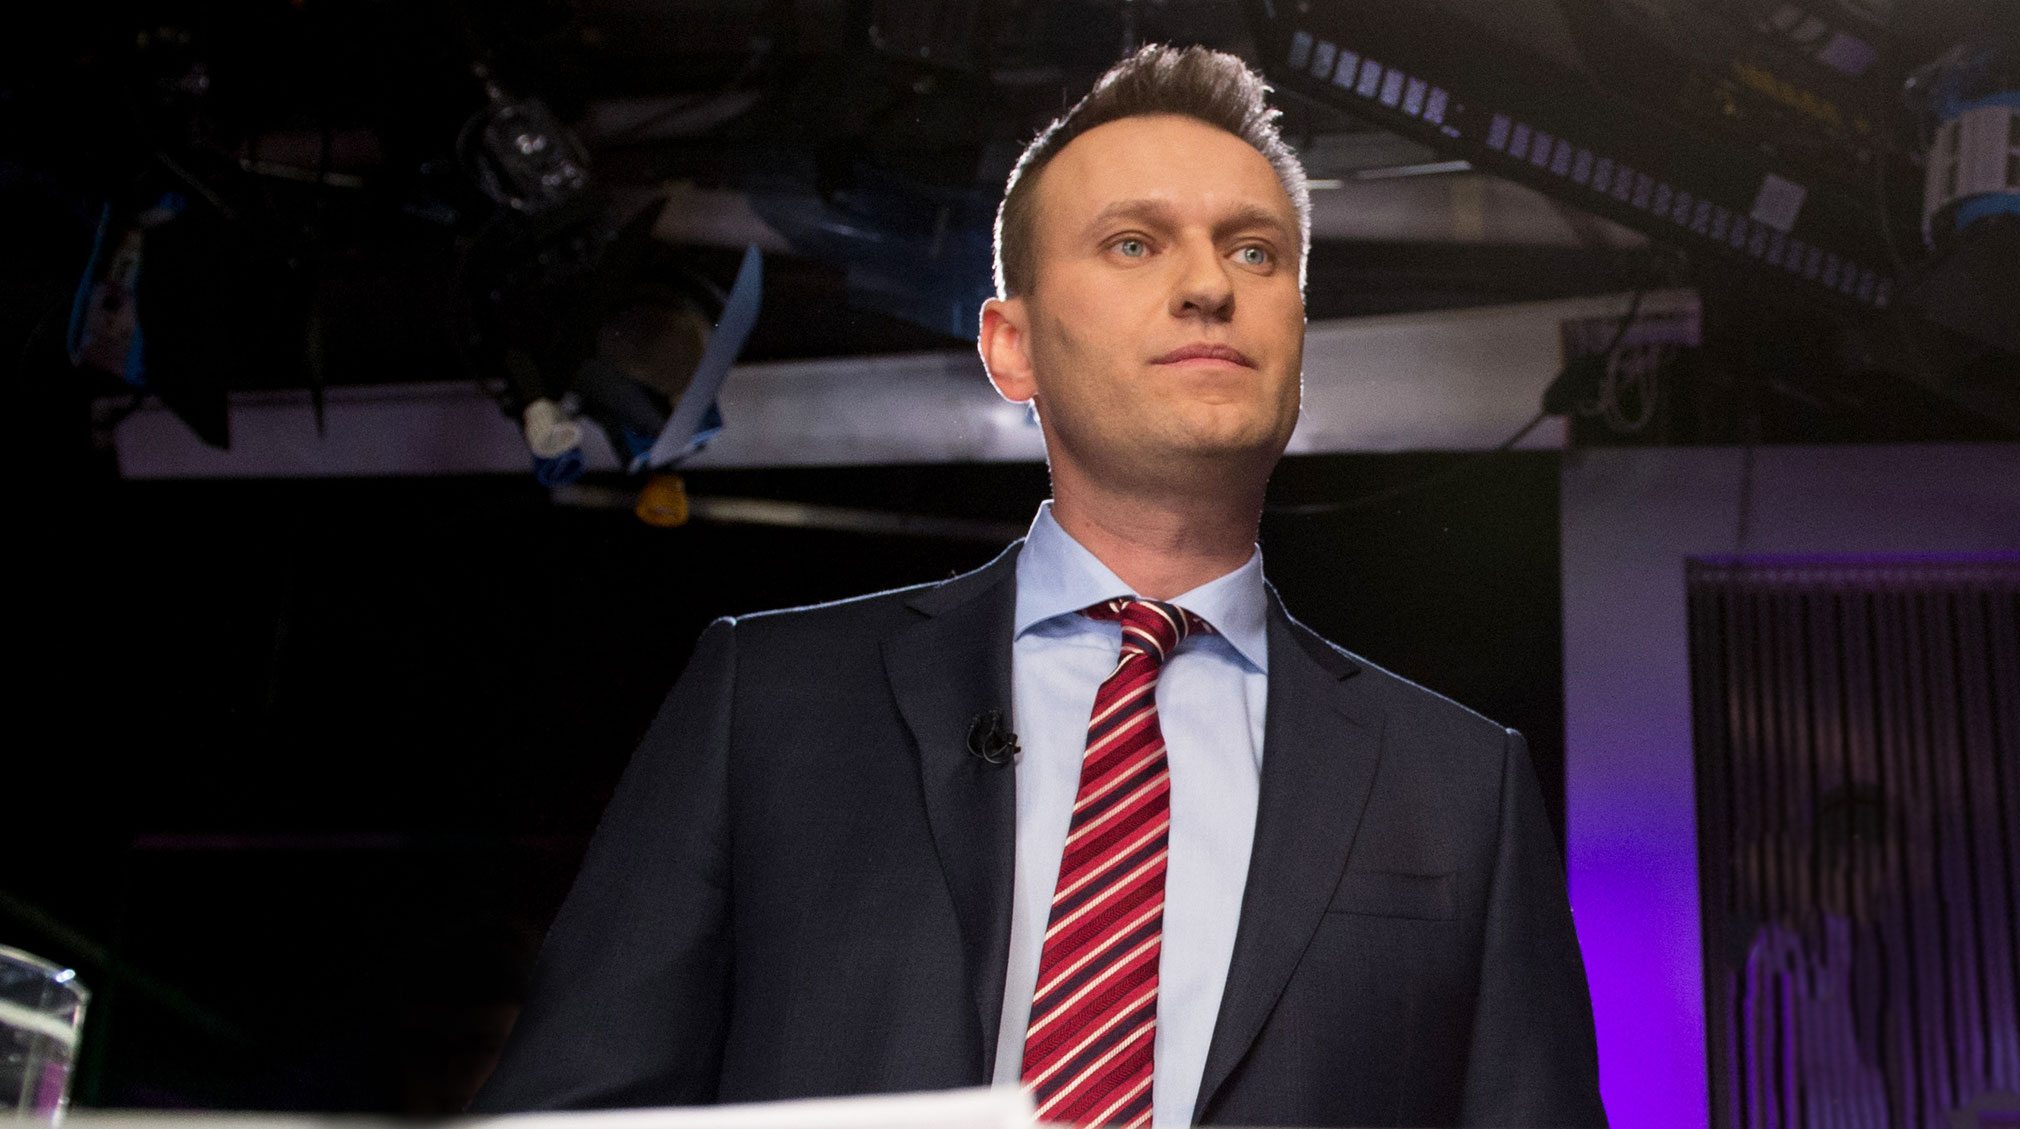 Алексей Навальный, который отбывает 30 суток ареста, не сможет выполнить требования миллиардера Алишера Усманова undefined